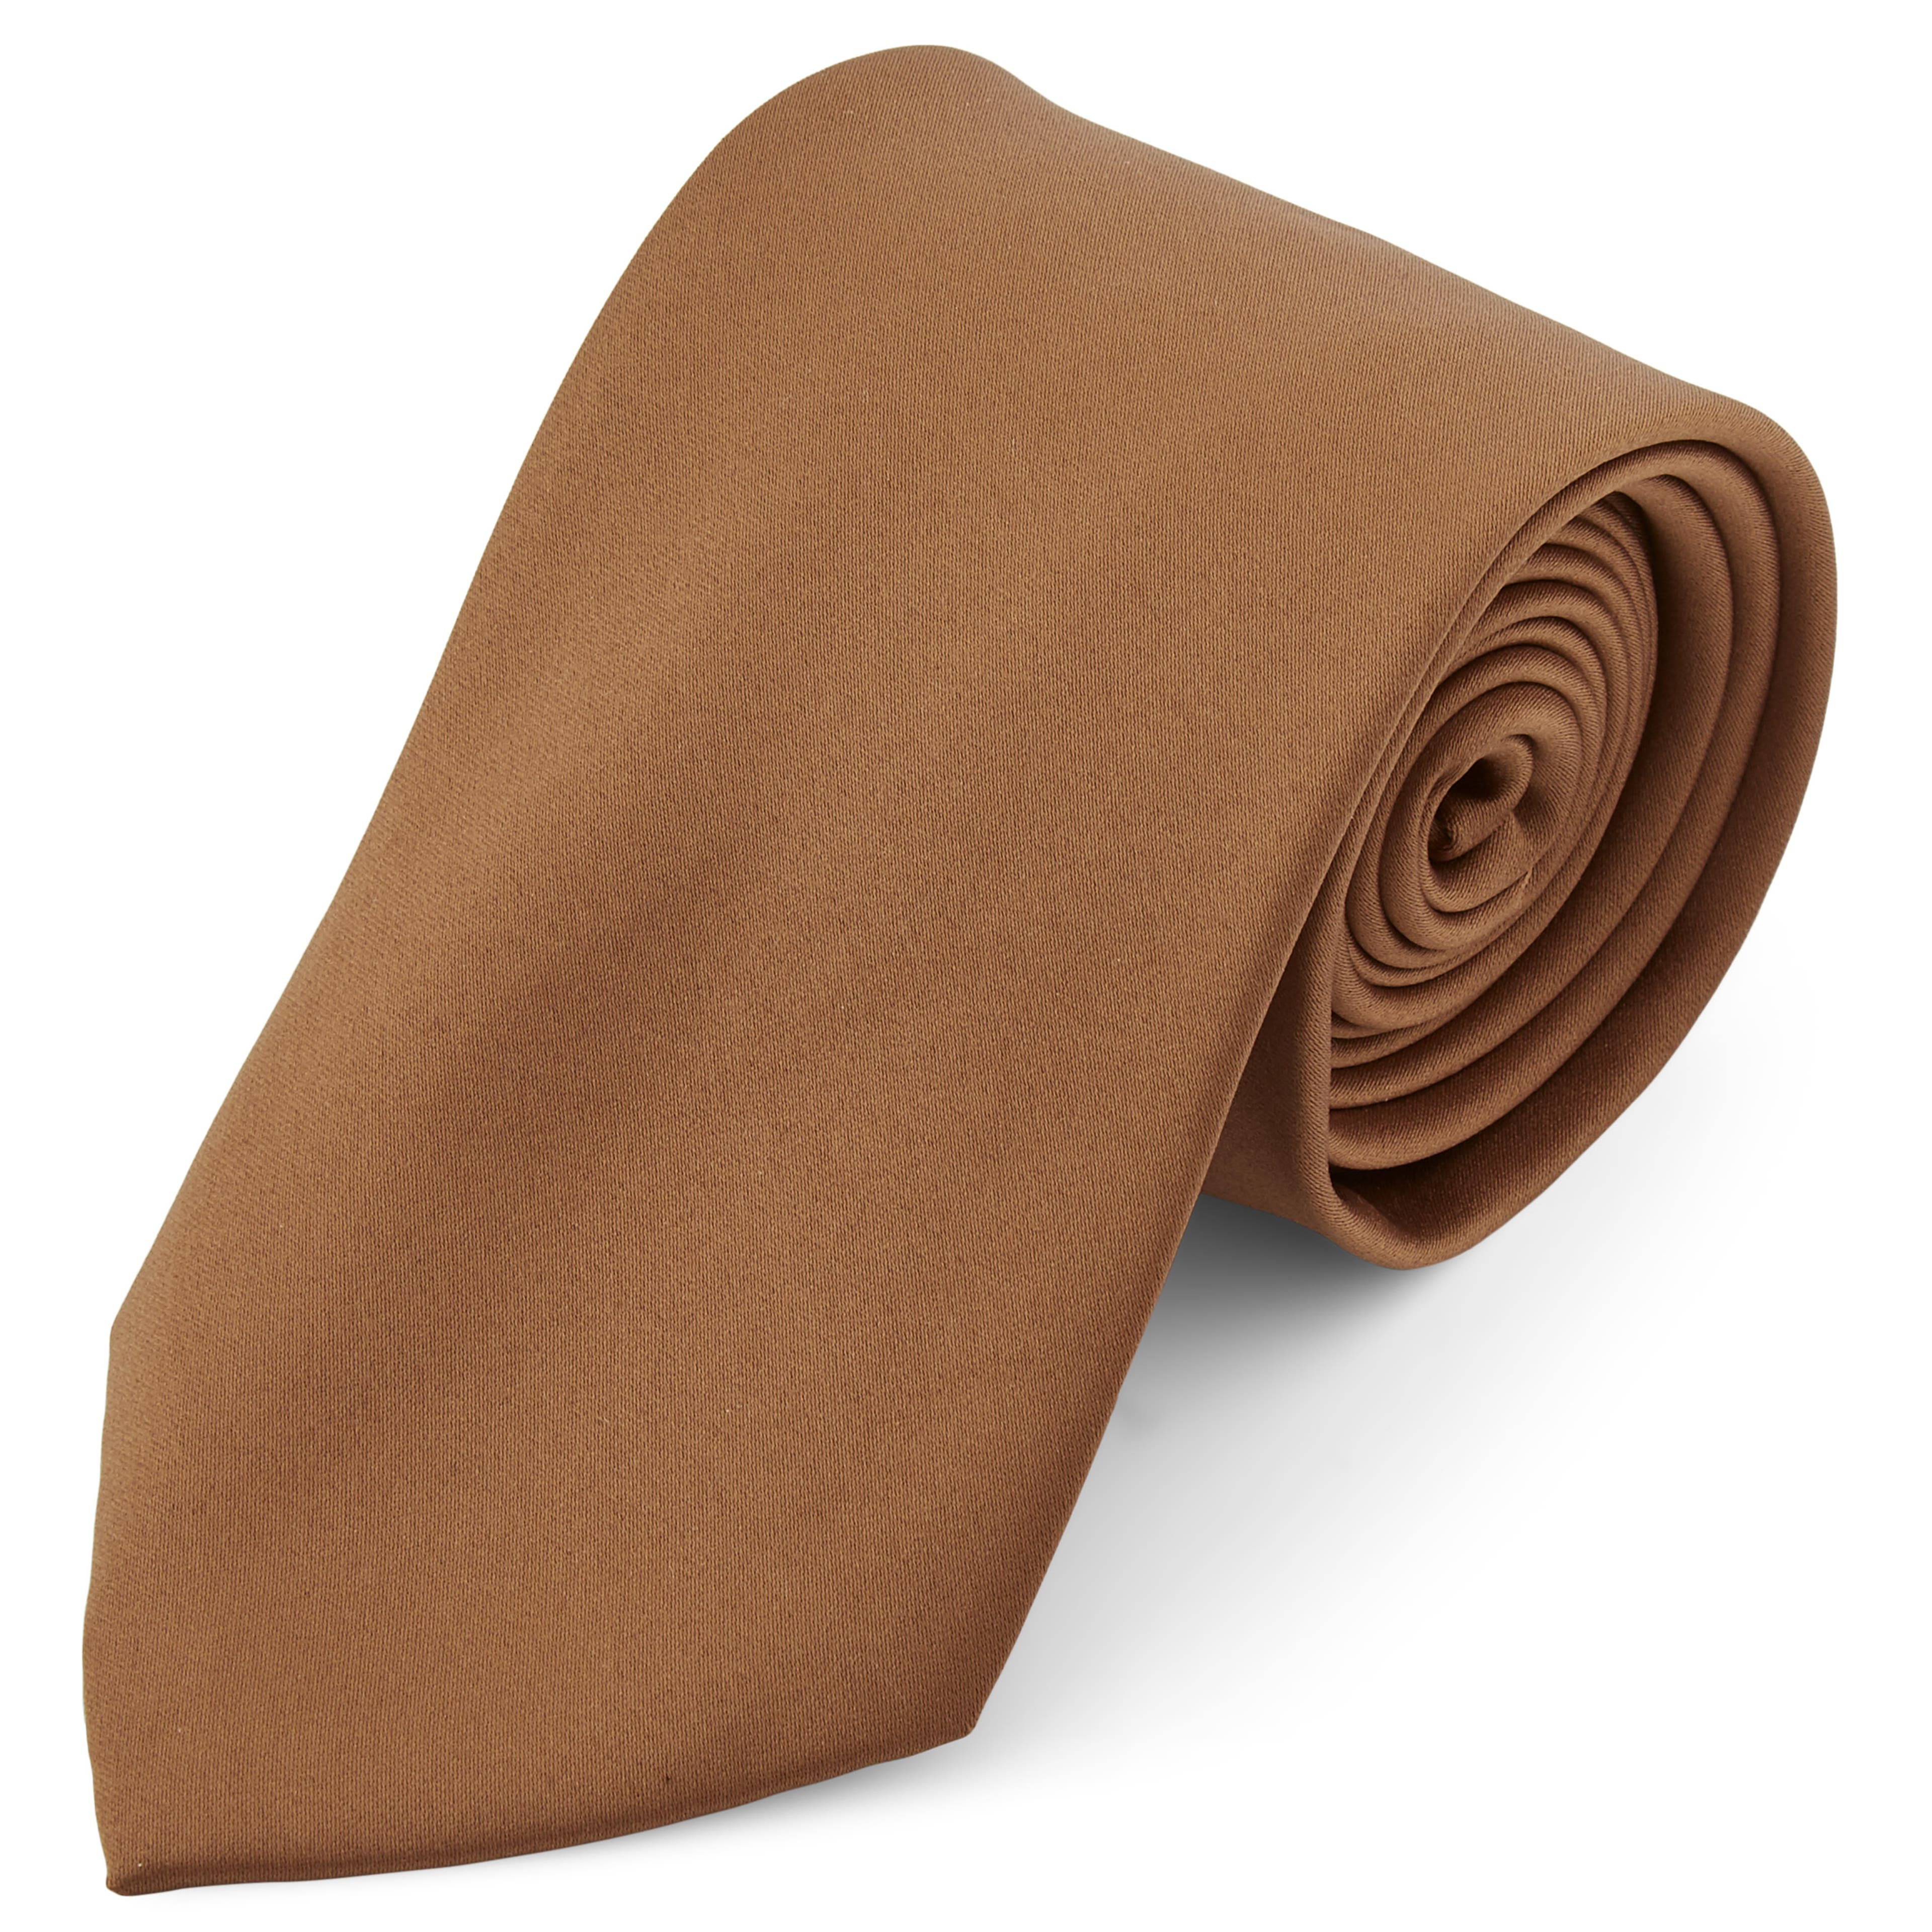 Corbata básica marrón claro 8 cm